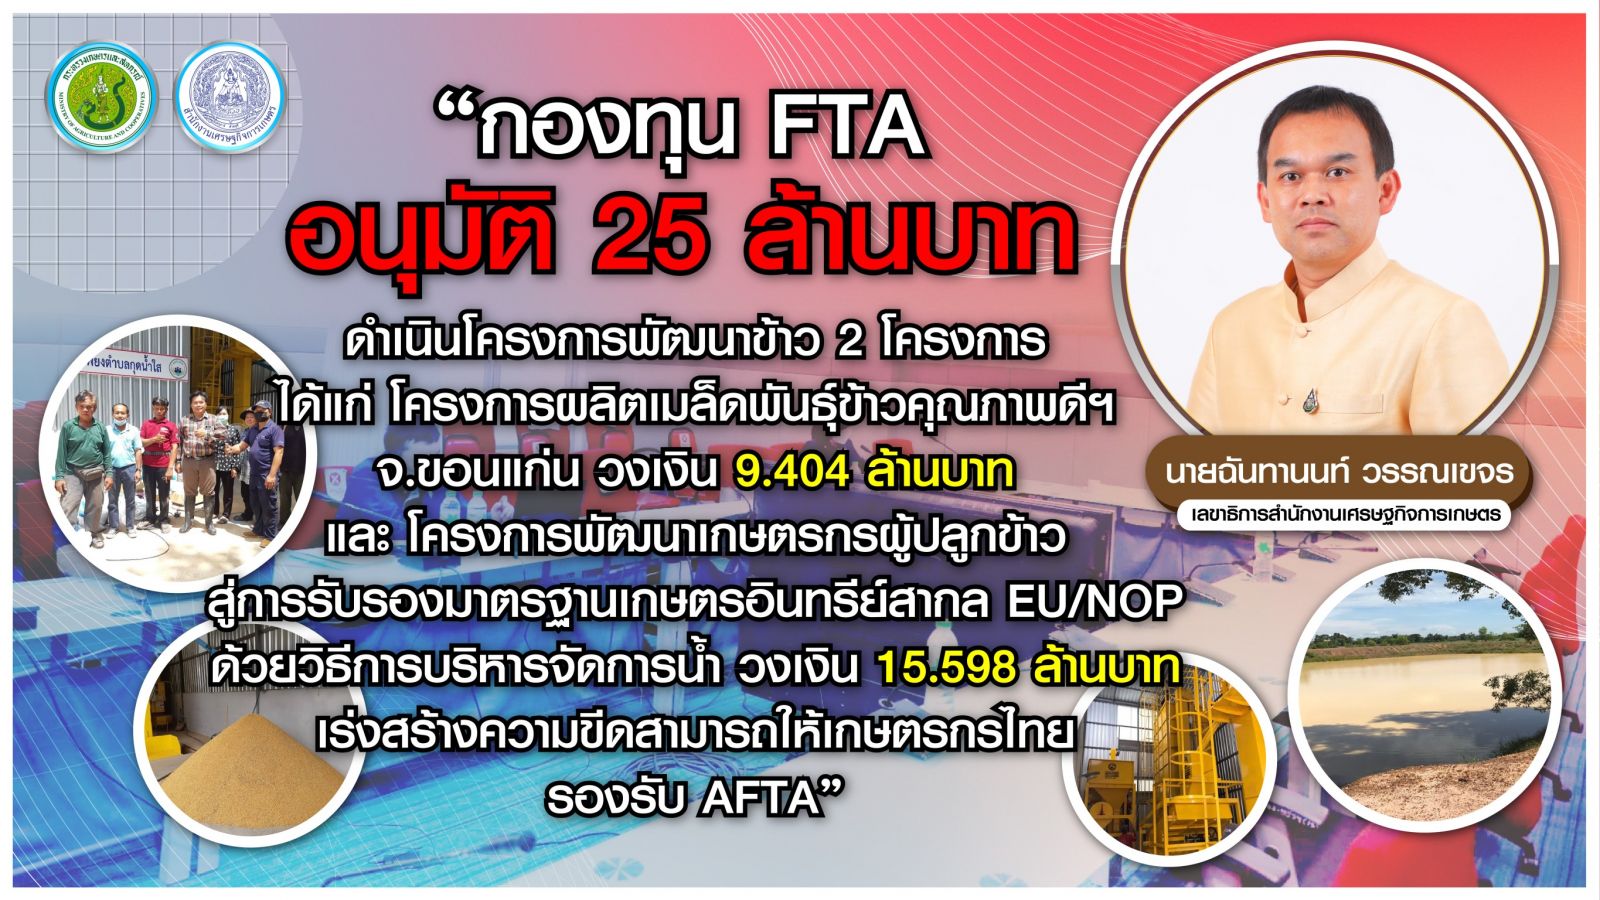 กองทุน FTA ไฟเขียว 25 ล้านบาท อนุมัติ 2 โครงการพัฒนาข้าวไทย